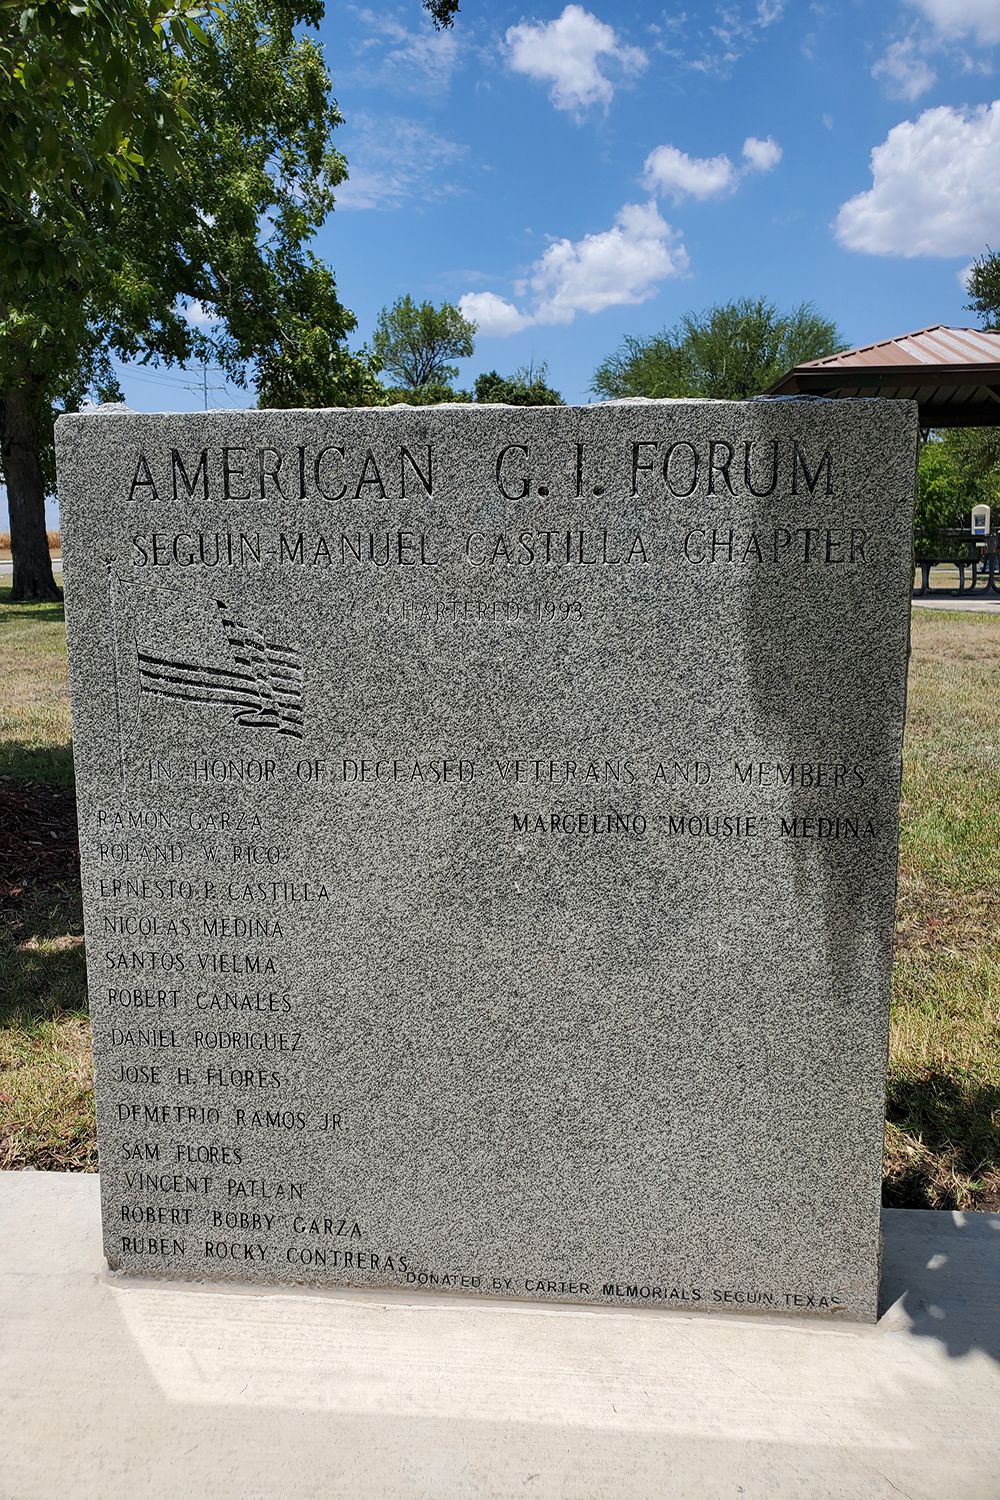 American G.I. Forum Memorial